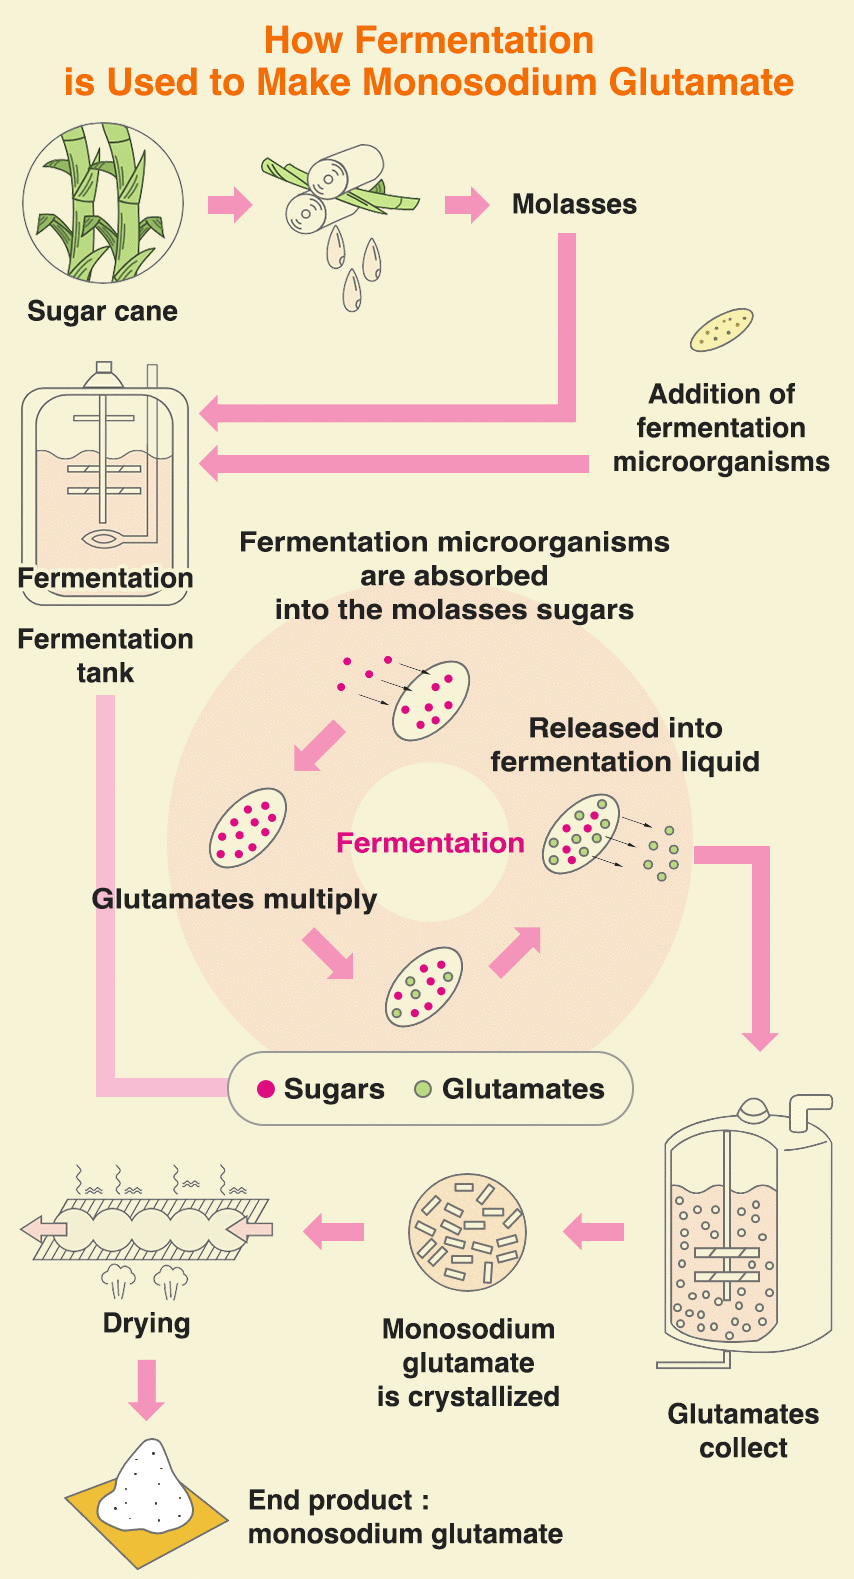 Comment la fermentation est utilisée pour fabriquer du glutamate monosodique